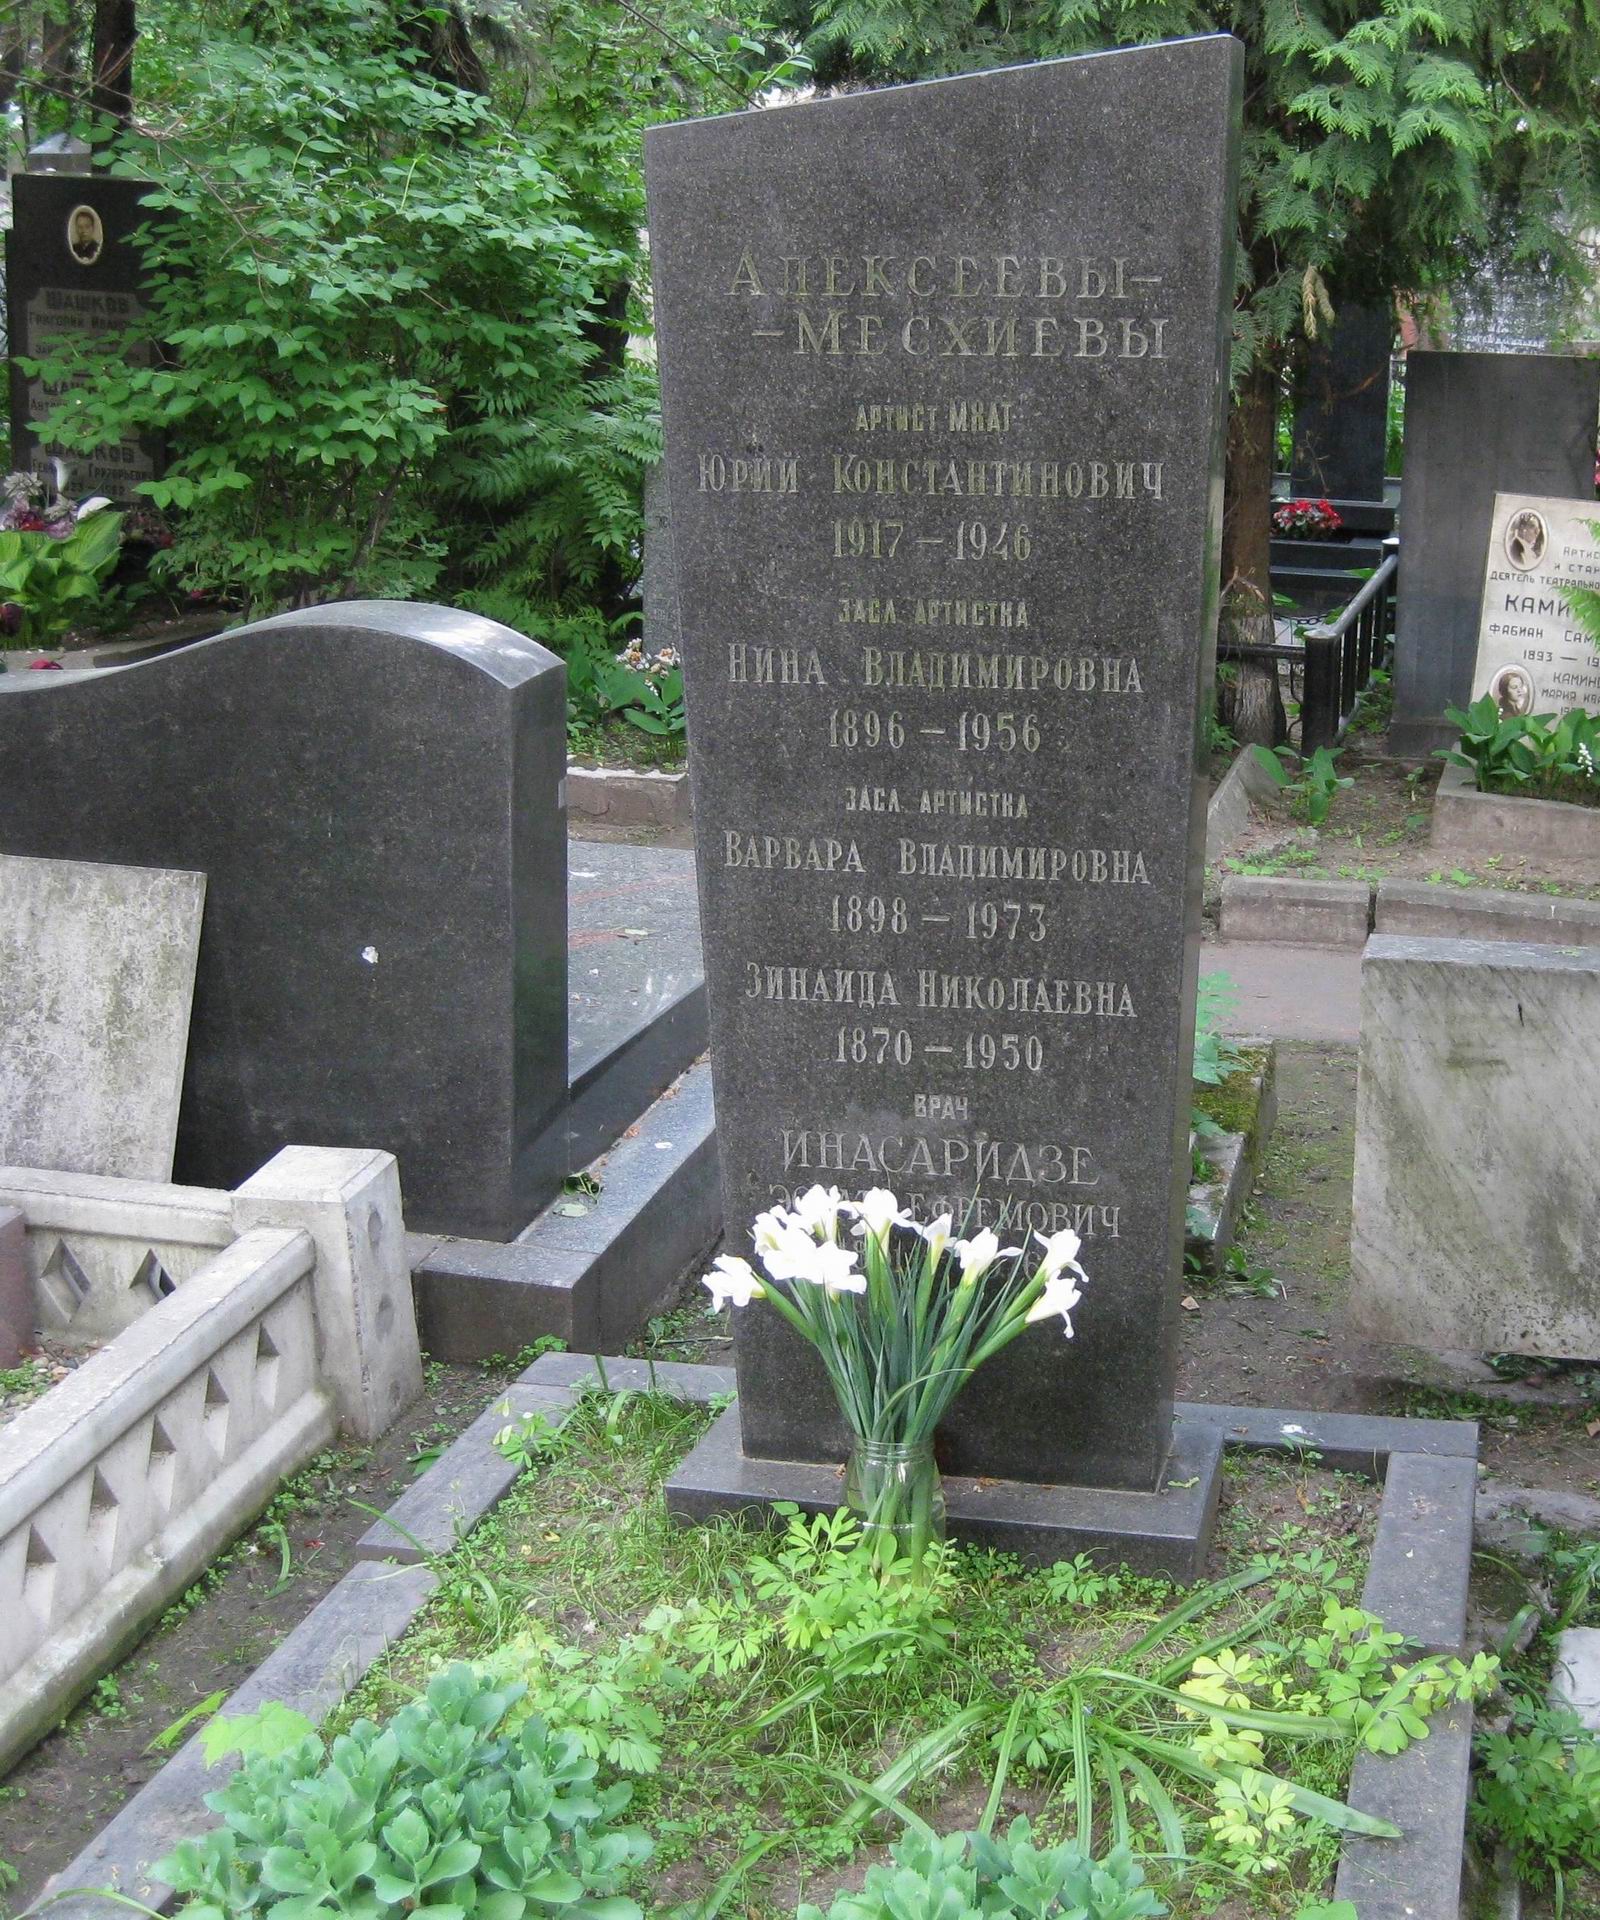 Памятник на могиле Алексеева-Месхиева Ю.К. (1917–1946), на Новодевичьем кладбище (2–11–6).